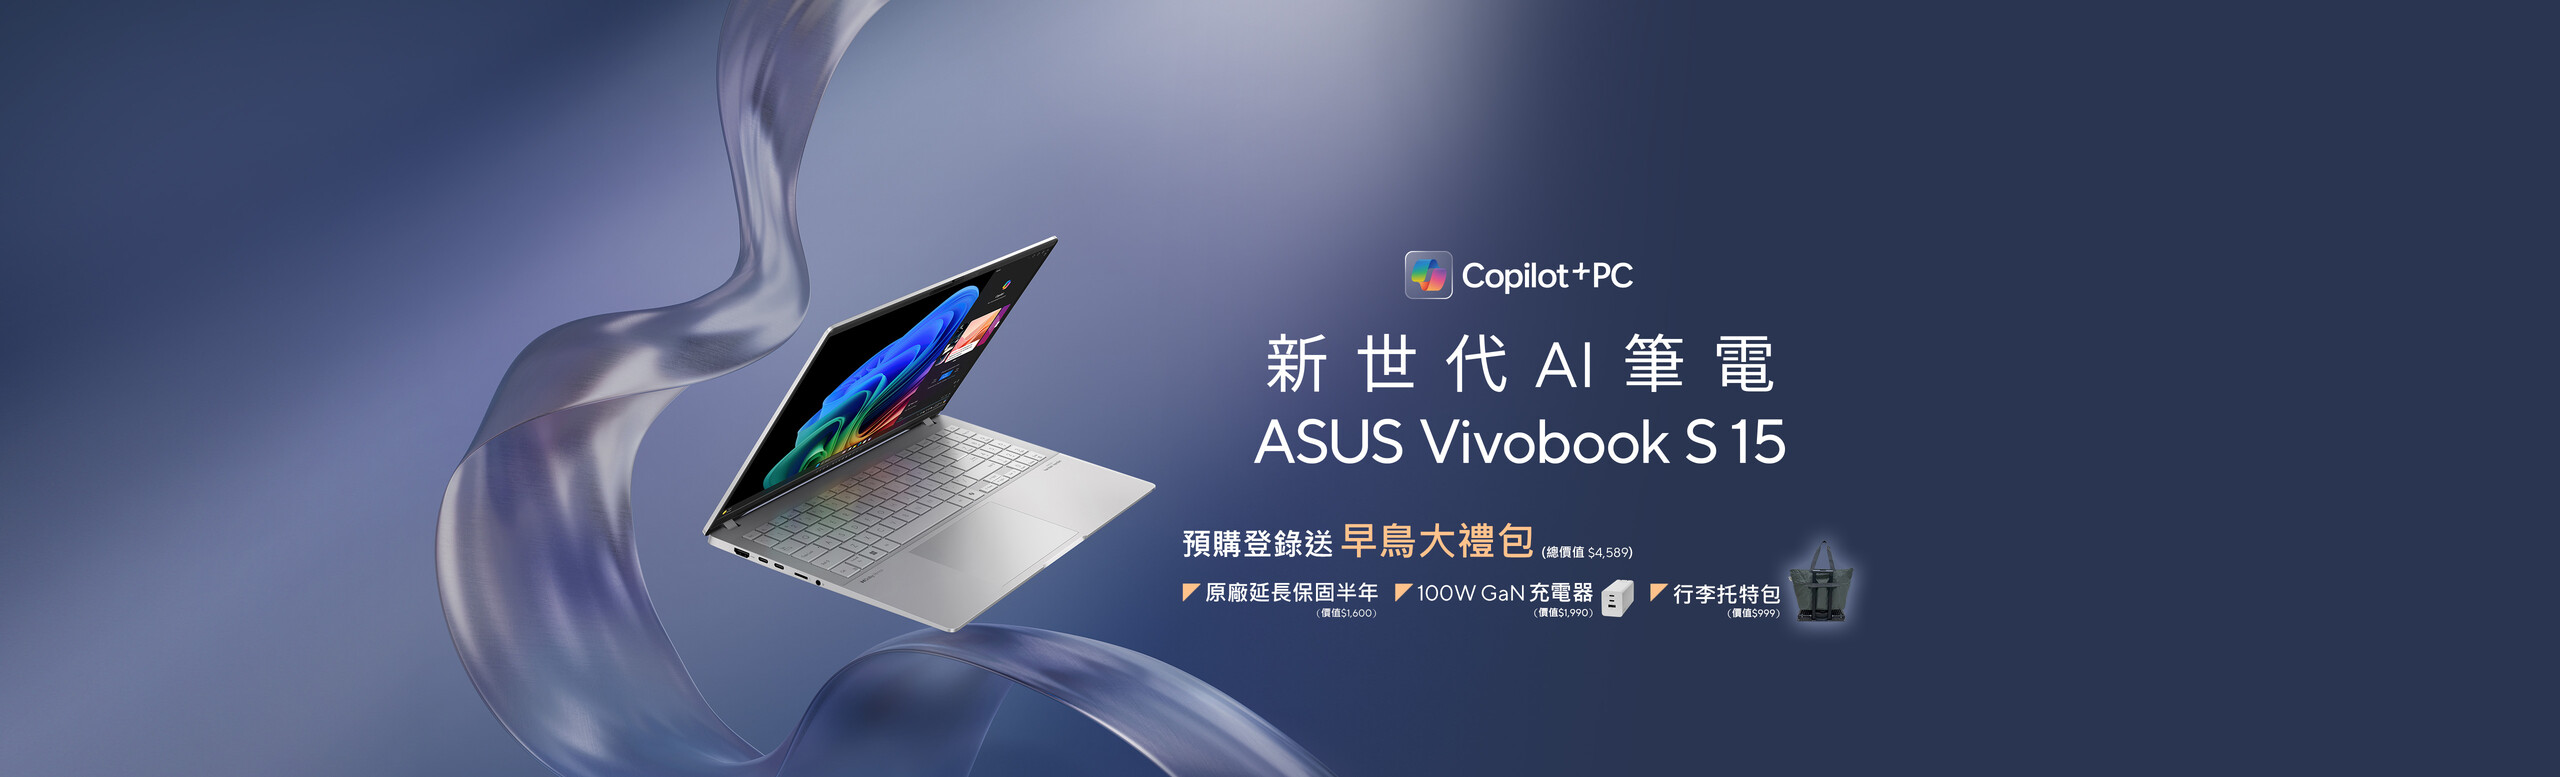 新世代 AI 筆電 ASUS Vivobook S 15 預購登錄送早鳥大禮包